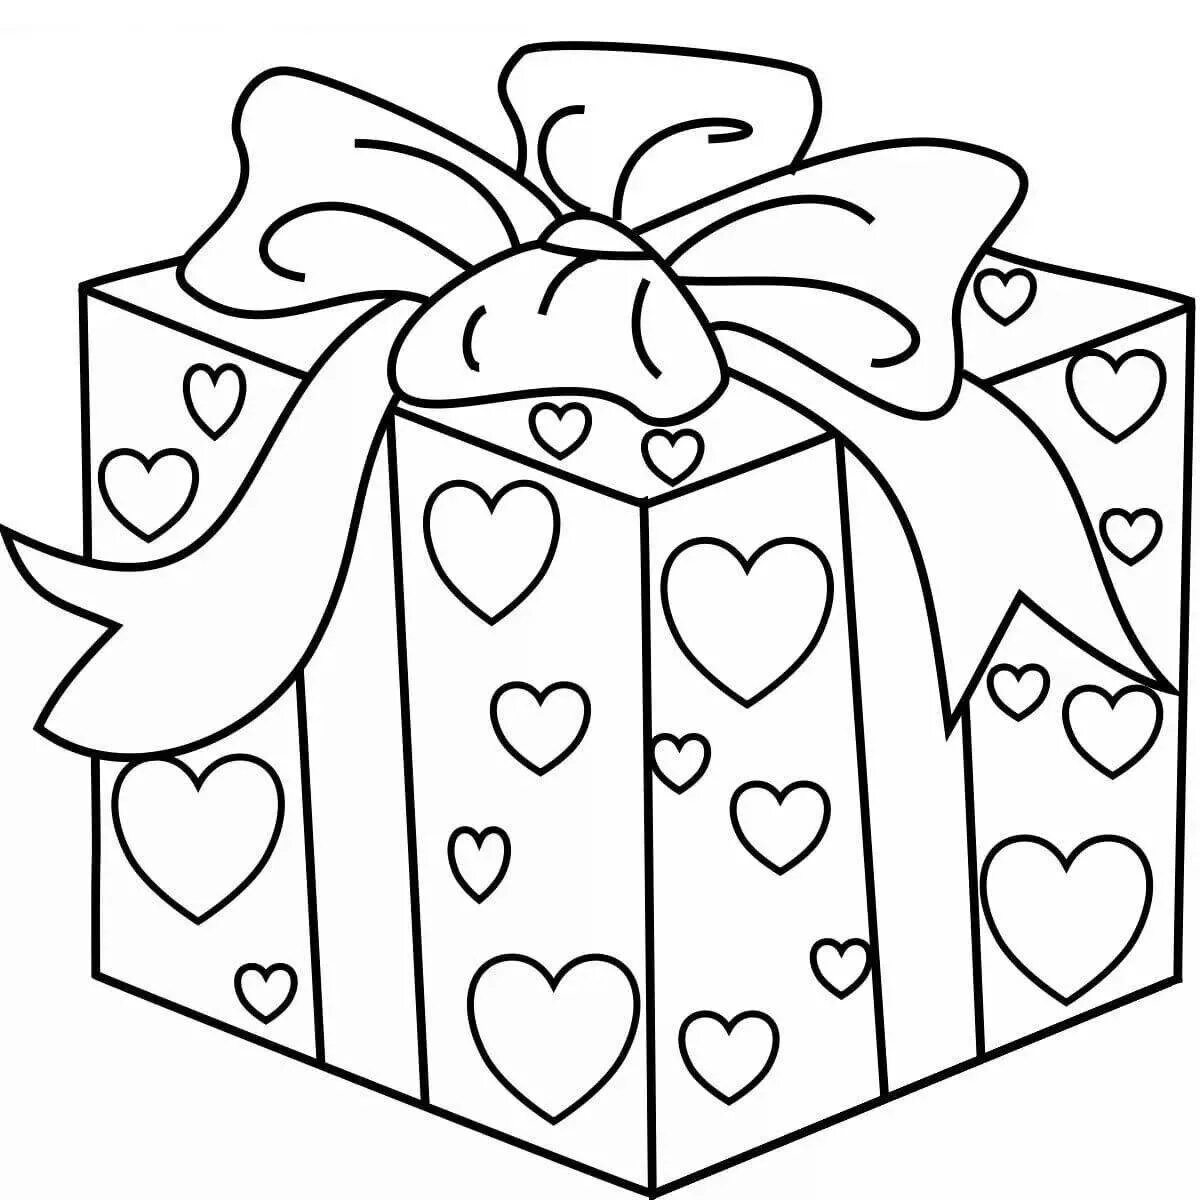 Подарки распечатать. Подарок раскраска. Подарок раскраска для детей. Новогодние подарки раскраска. Раскраска коробка с подарком.